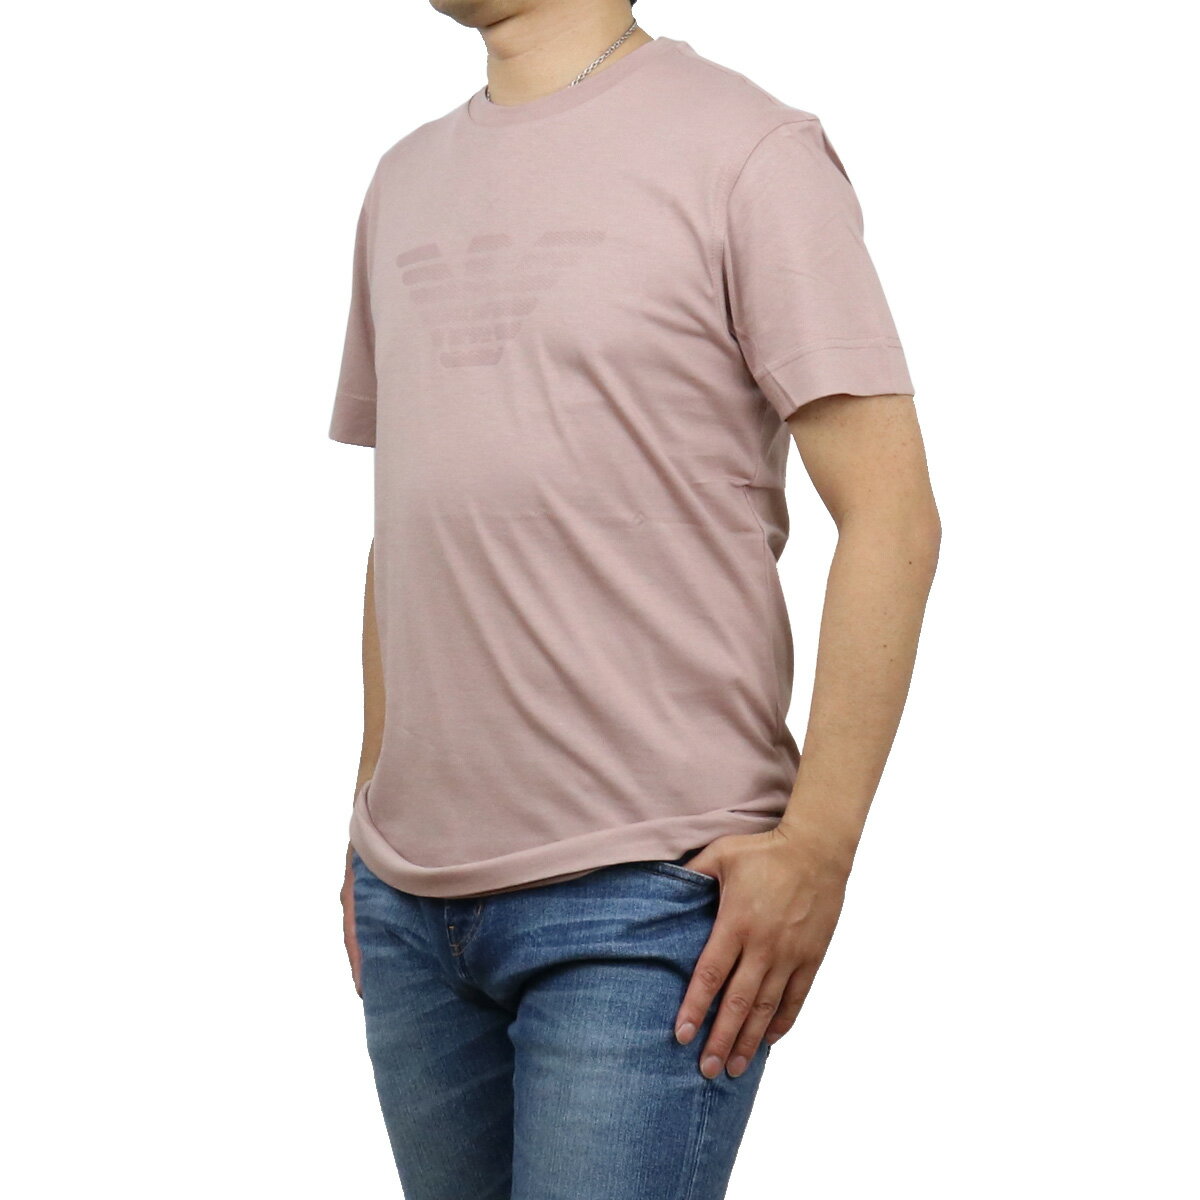 エンポリオ・アルマーニ エンポリオアルマーニ EMPORIO ARMANI メンズ－Tシャツ ブランドTシャツ 3K1TE6 1JSHZ 0306 ROSA ANTICO ピンク系 ts-01 apparel-01 父の日 sm-02